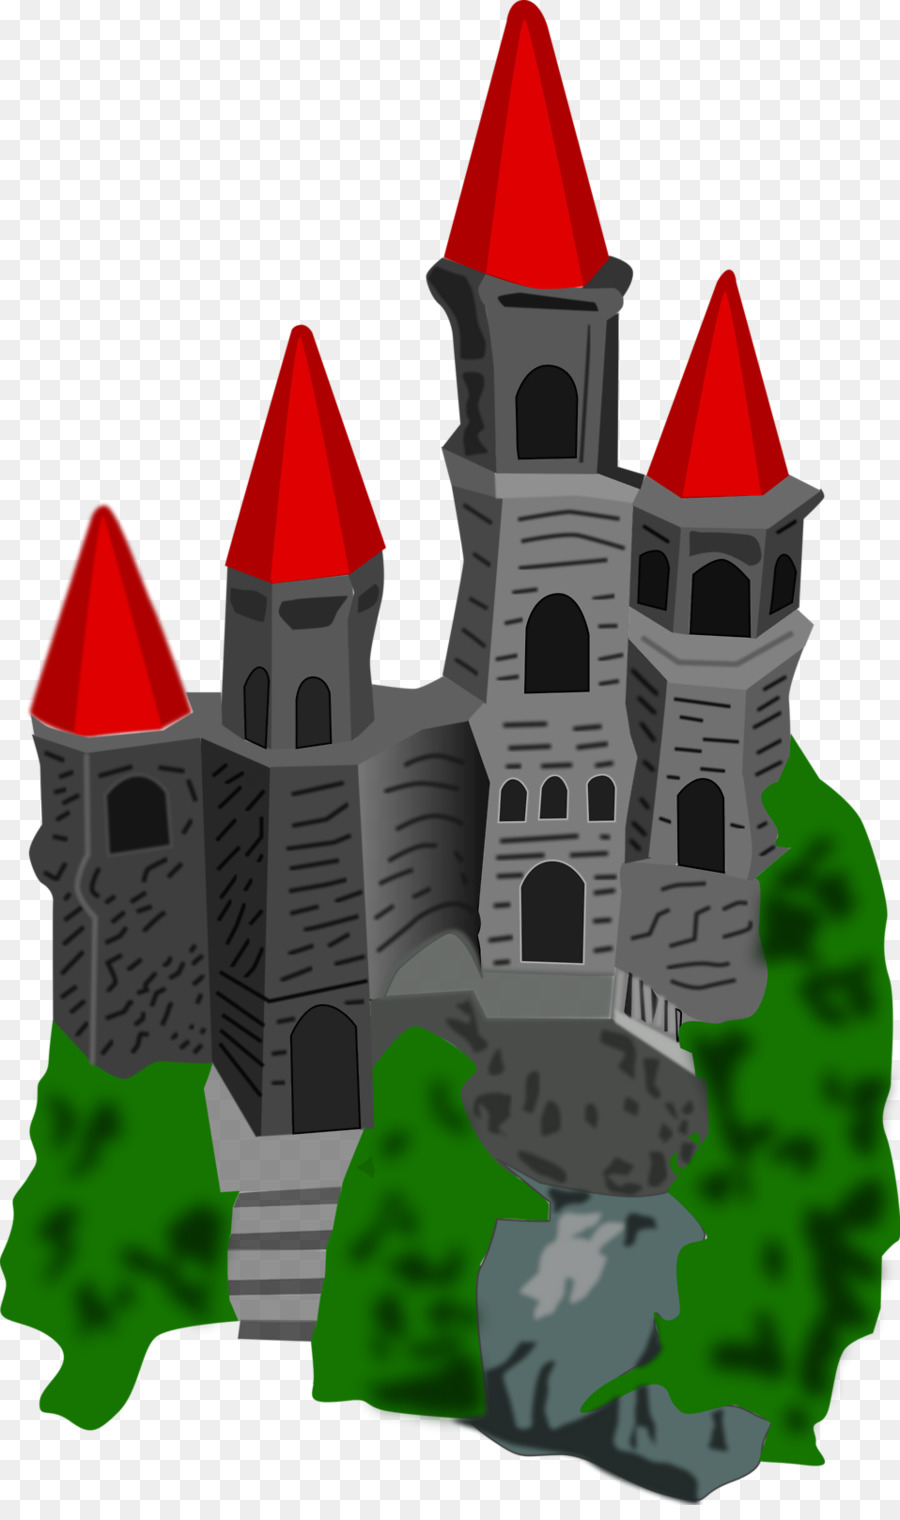 Castle Drawing Clip art - Castle png download - 958*1602 - Free Transparent Castle png Download.